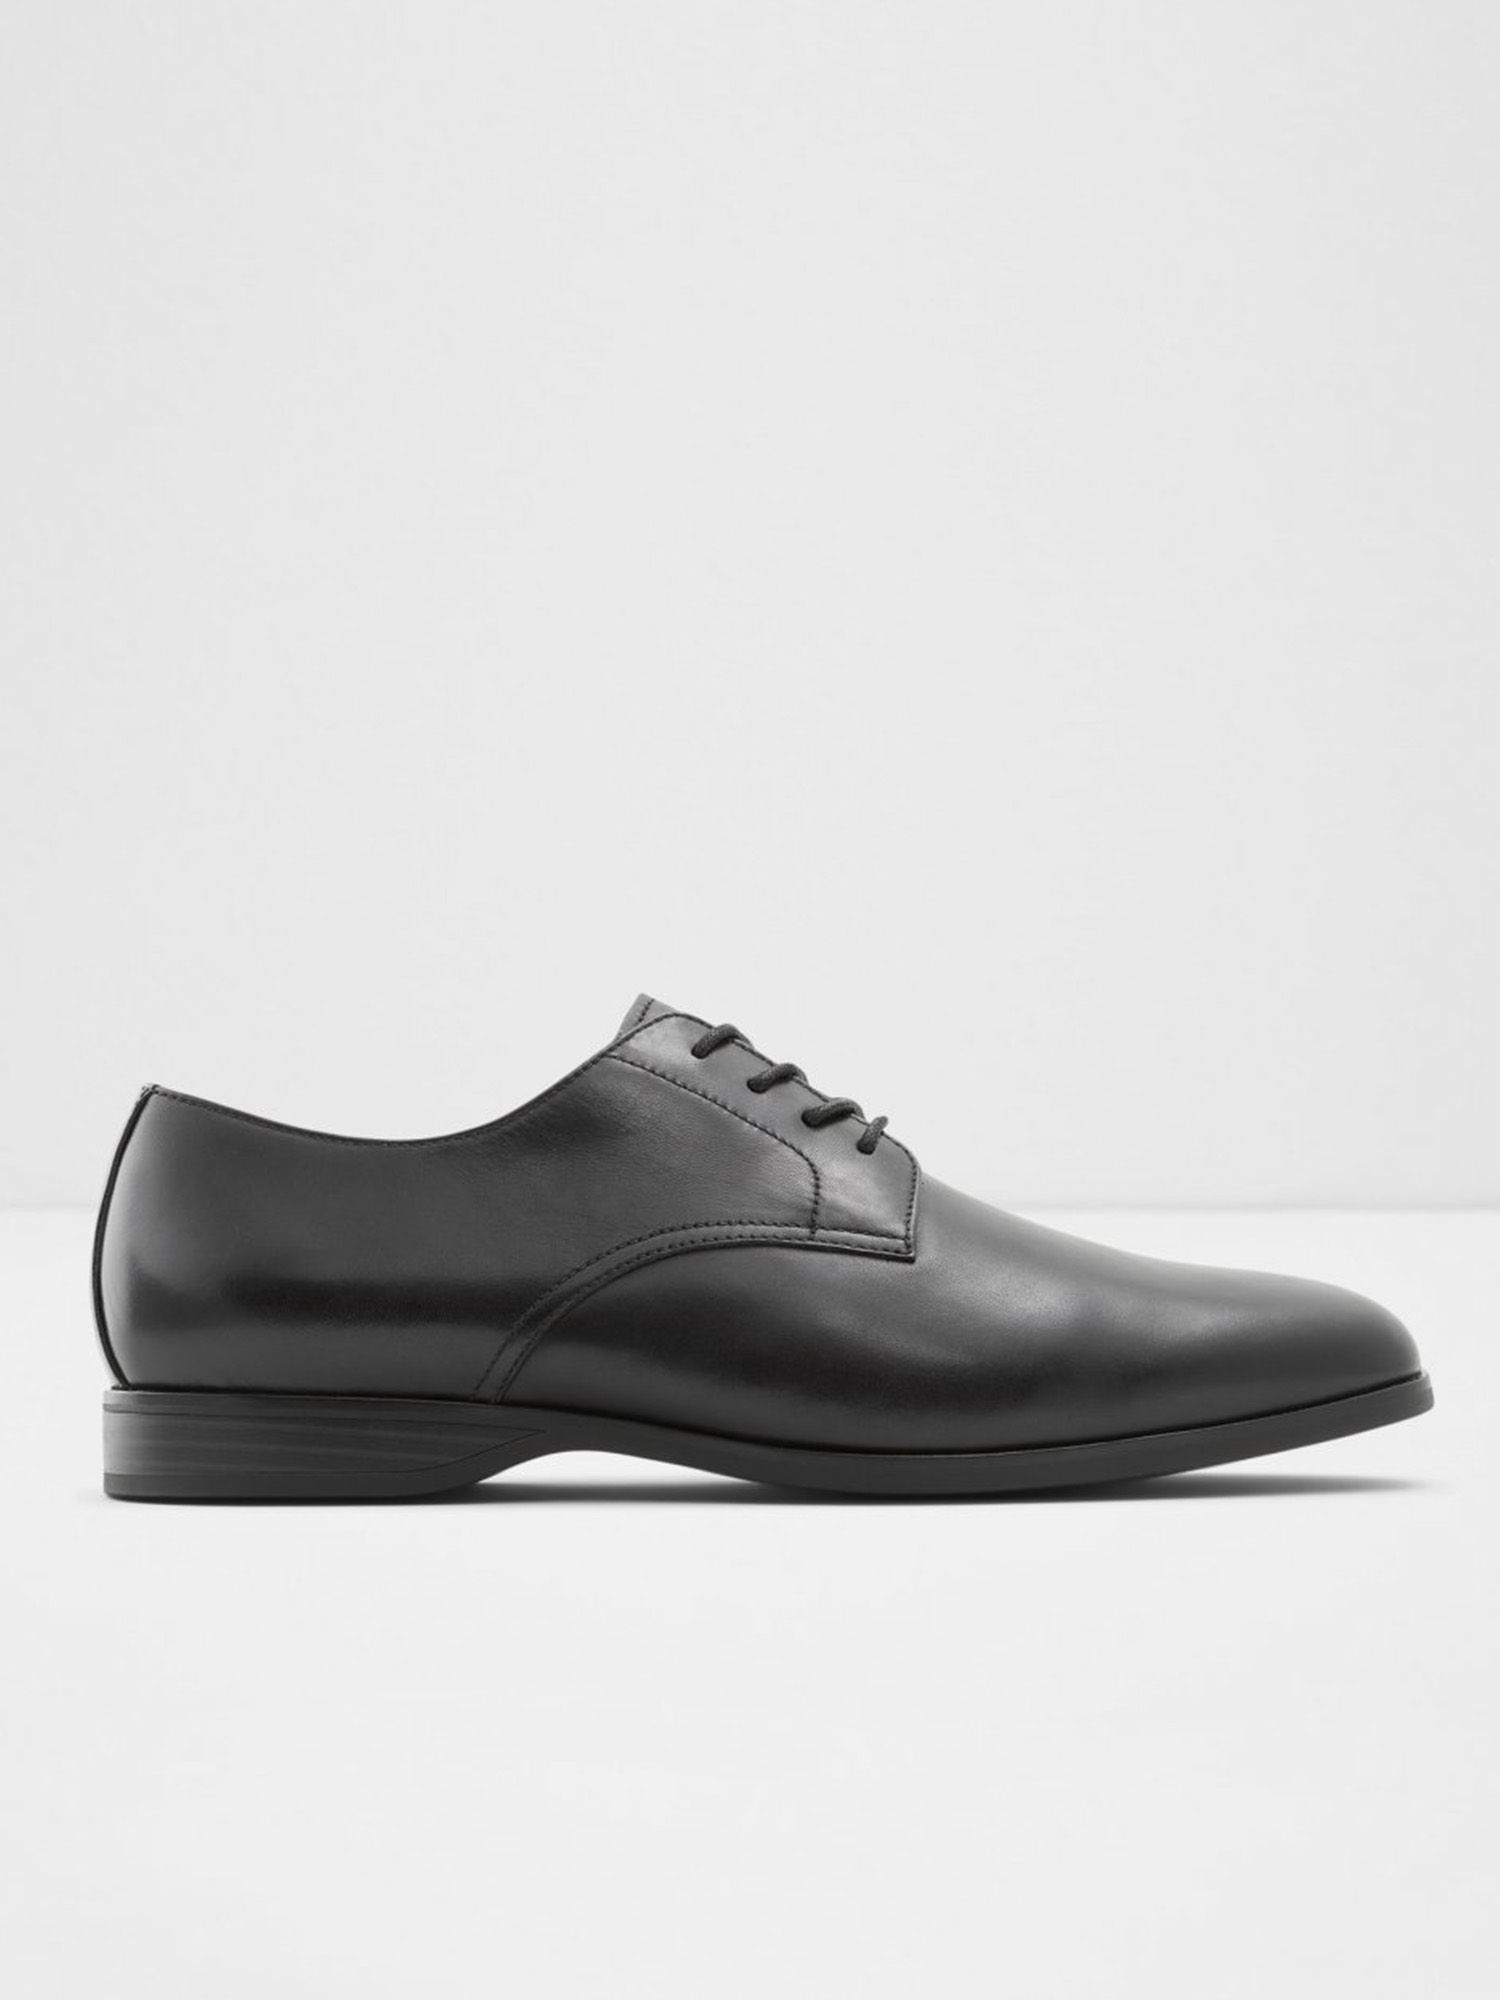 Aldo Tolkien Solid Black Formal Shoes: Buy Aldo Tolkien Solid Black ...